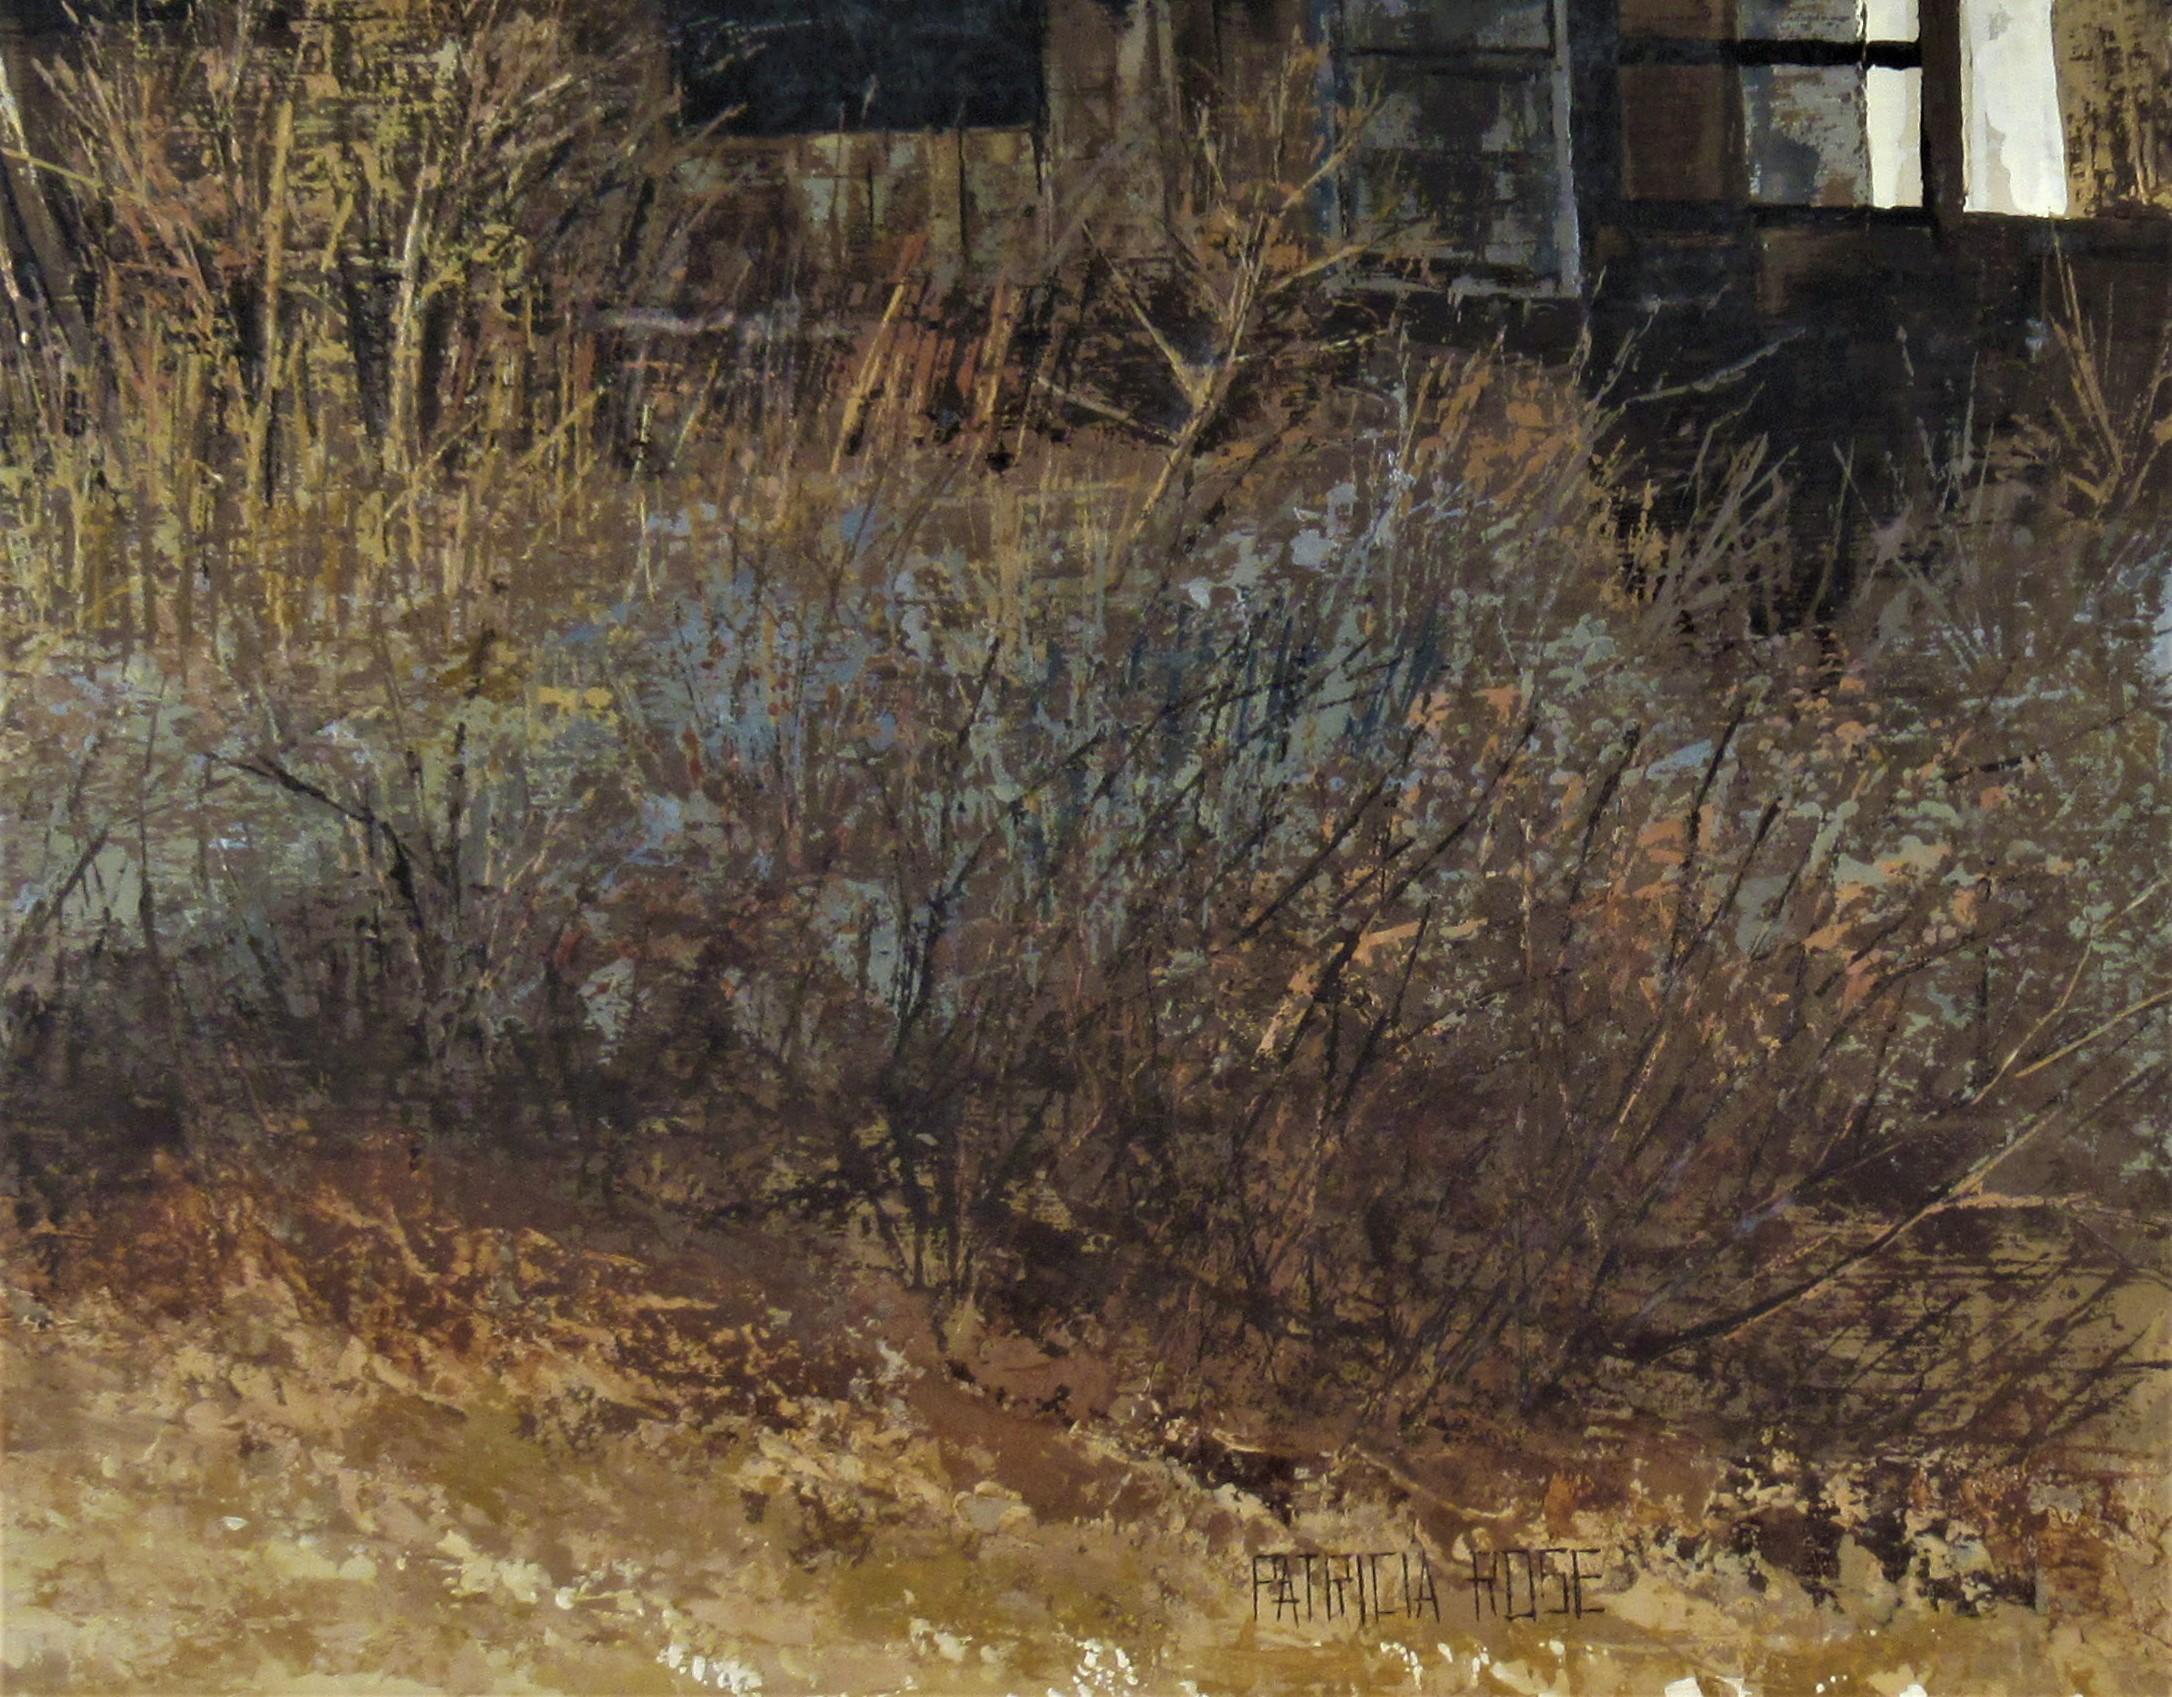 Spring aus Veilchenholz (Grau), Landscape Painting, von Patricia Rose